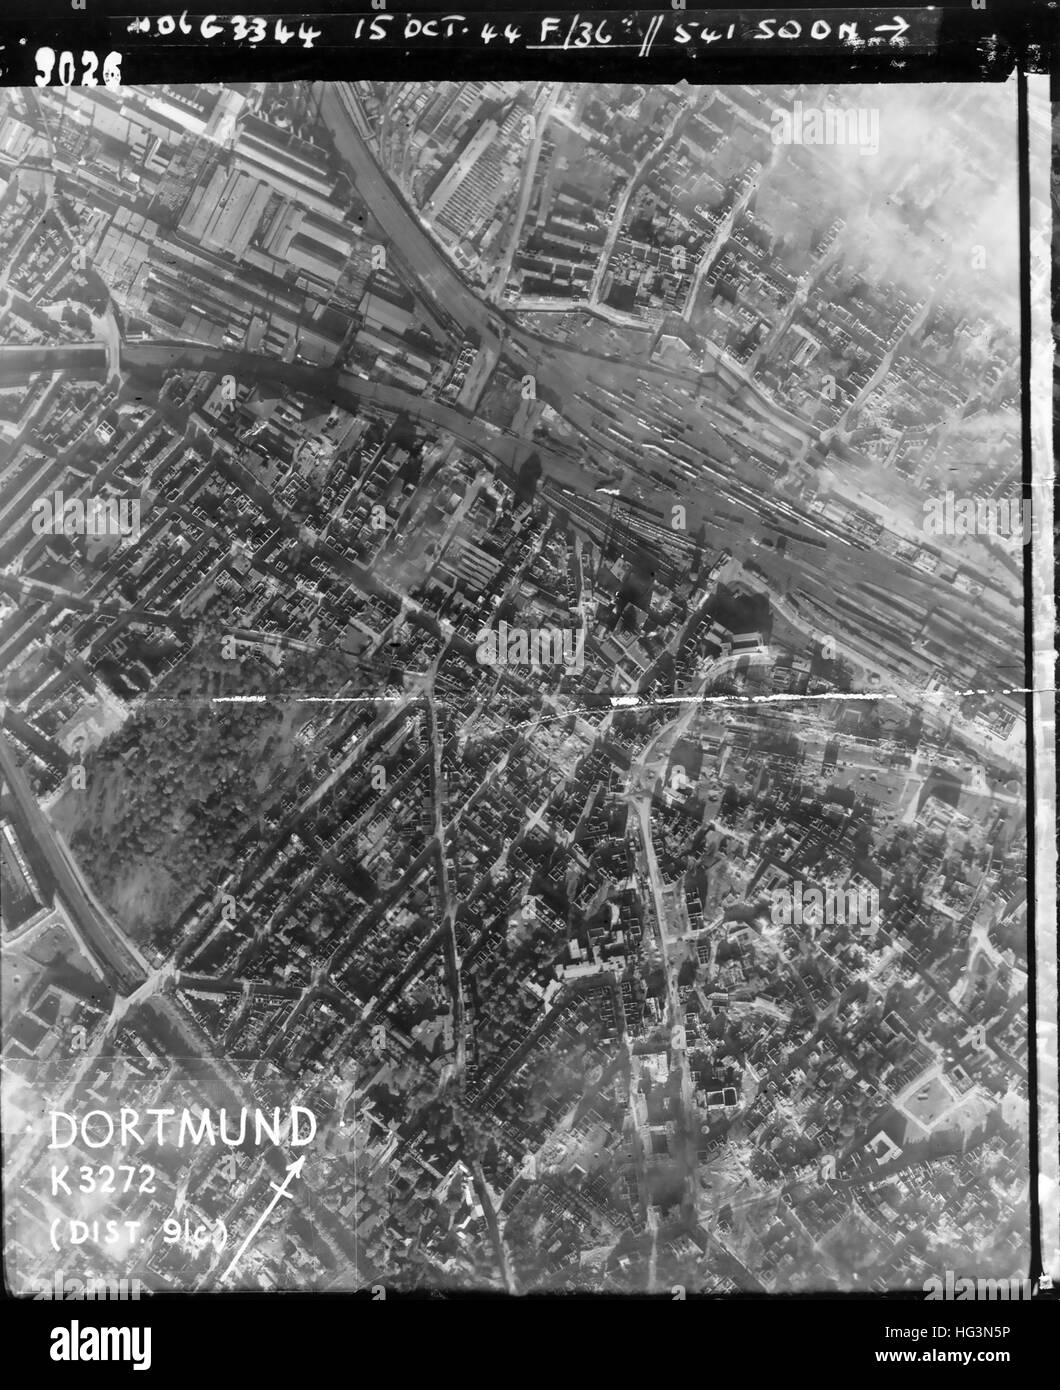 DORTMUND, Deutschland in eine Luftaufklärung Foto am 15. Oktober 1944 zeigt Bombenschäden im Bereich Süden westlich des Hauptbahnhofs. Stockfoto